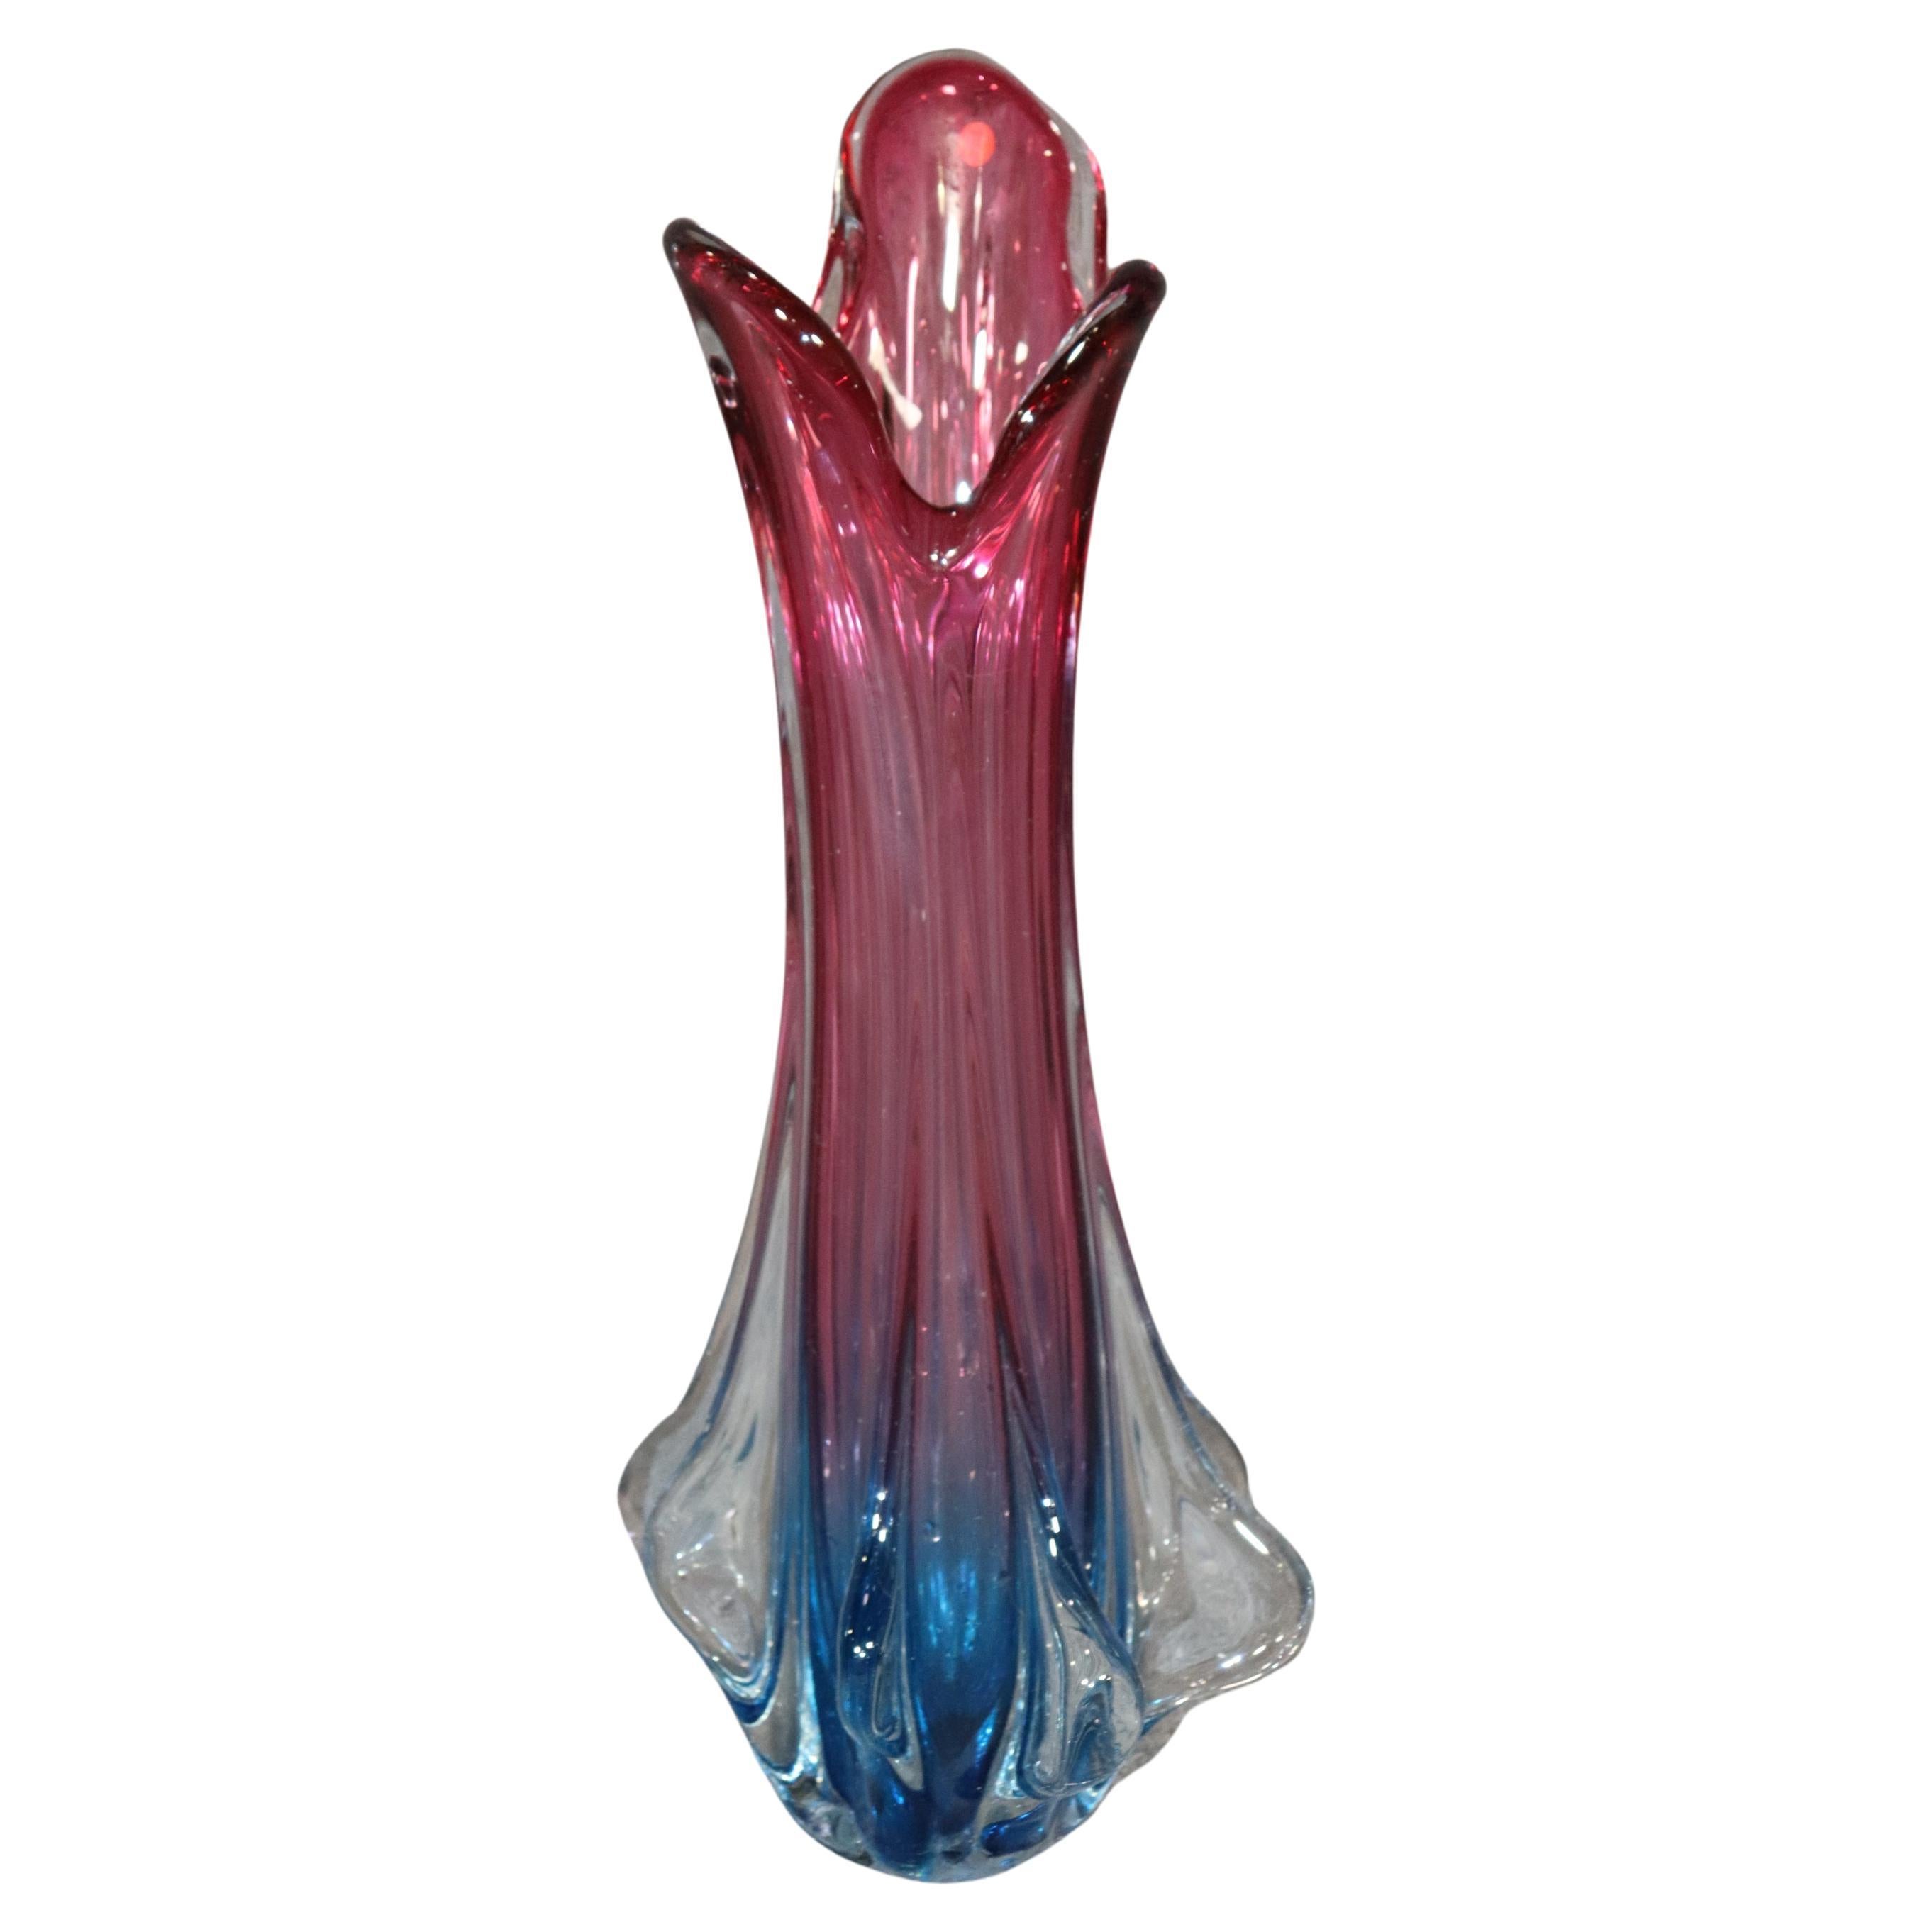 MCM - Grand et magnifique vase en verre de Murano multicolore, moderne du milieu du siècle dernier